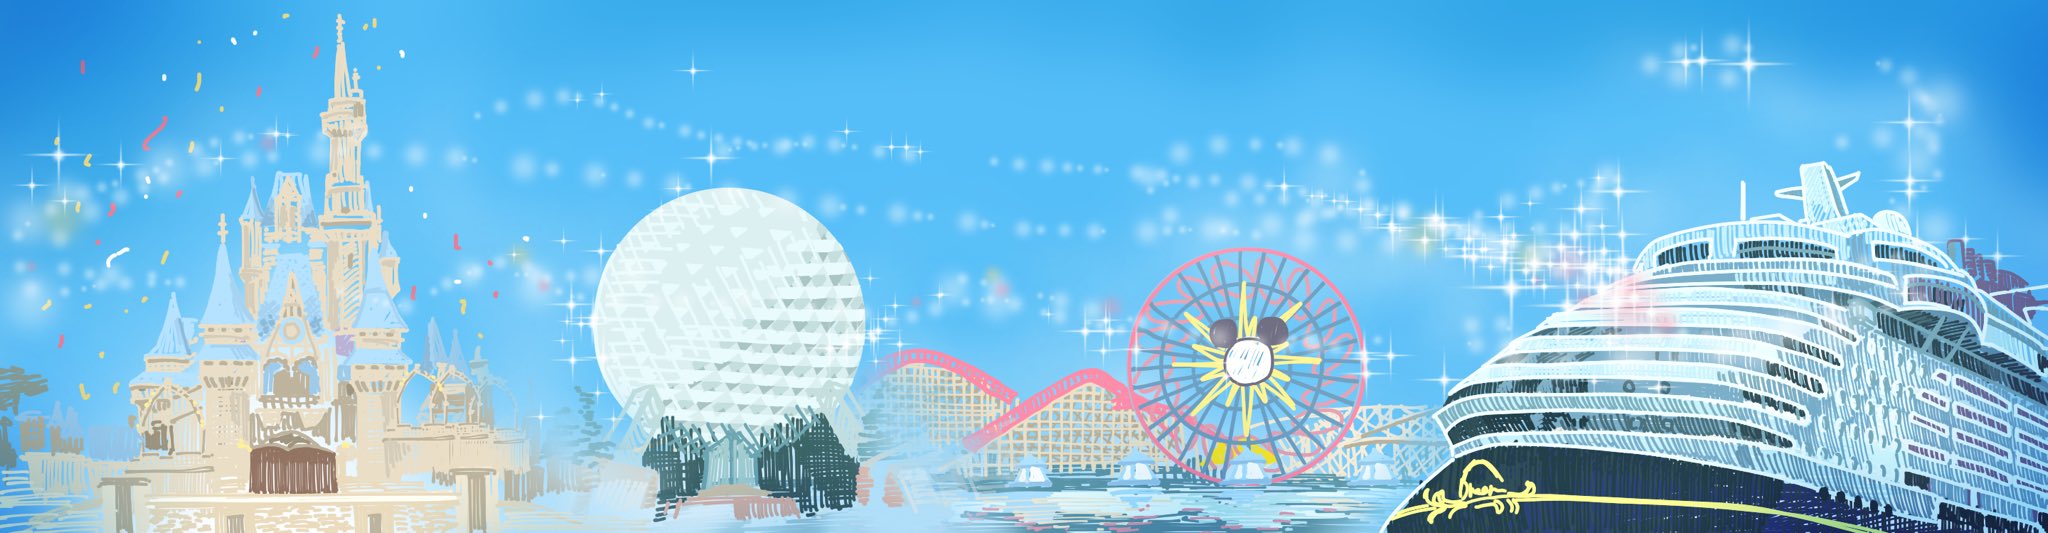 ディズニー夢と魔法の旅 フロリダのディズニーワールドの準備 予約 計画お役立ちサイト